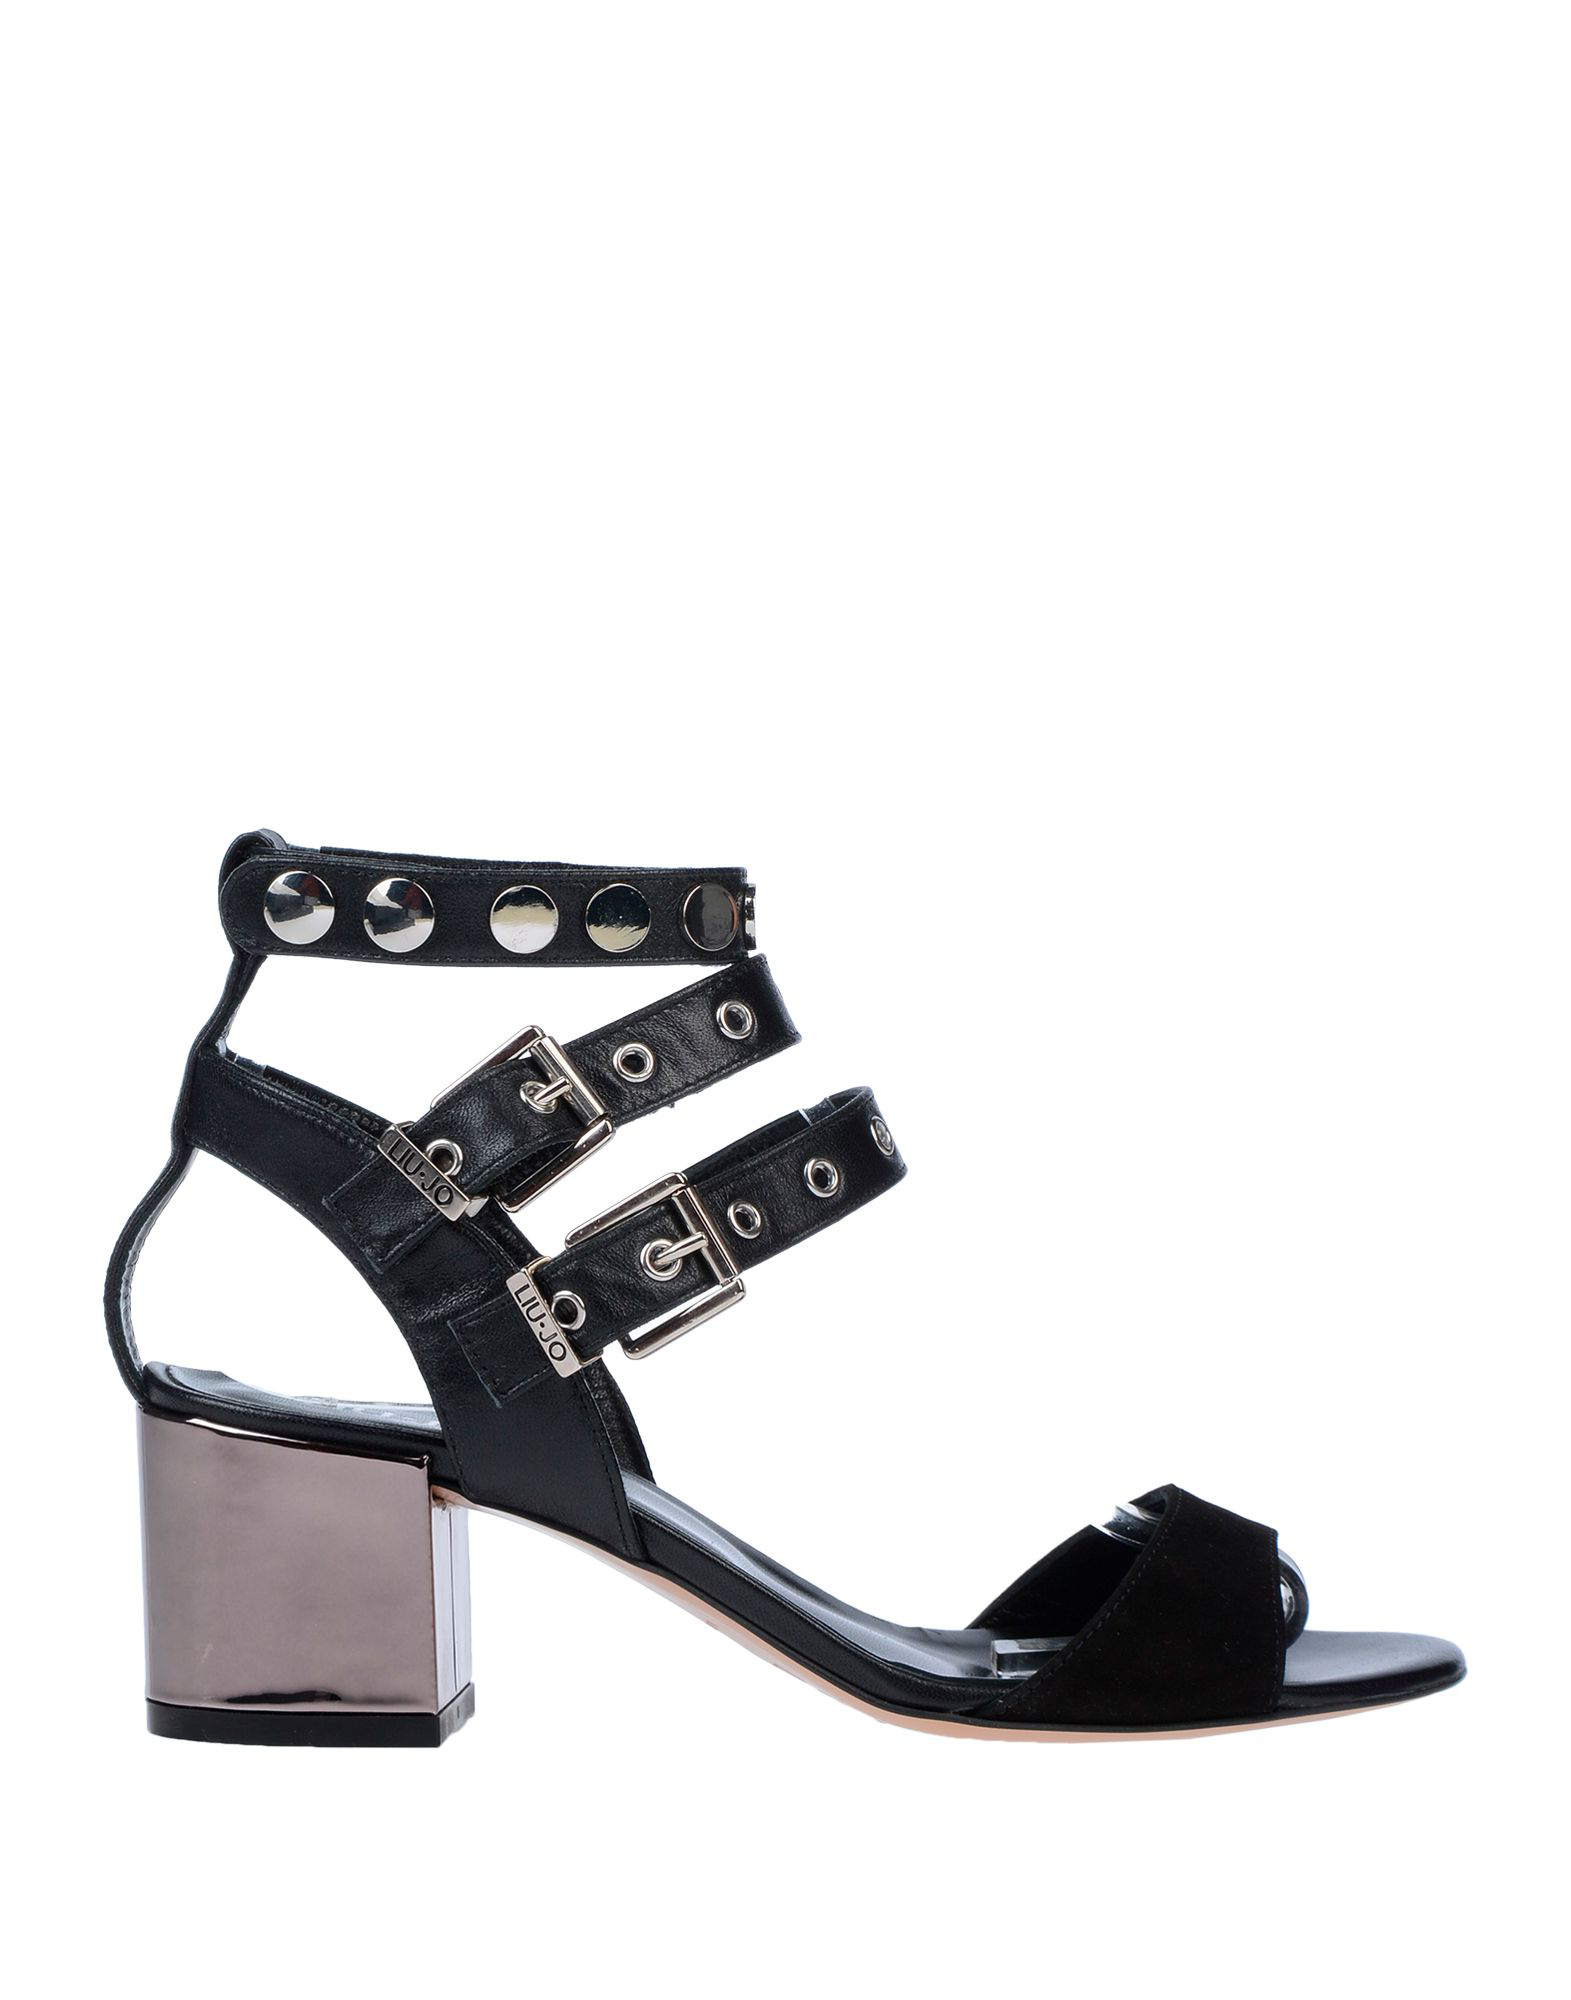 Liu •jo Sandals In Black | ModeSens